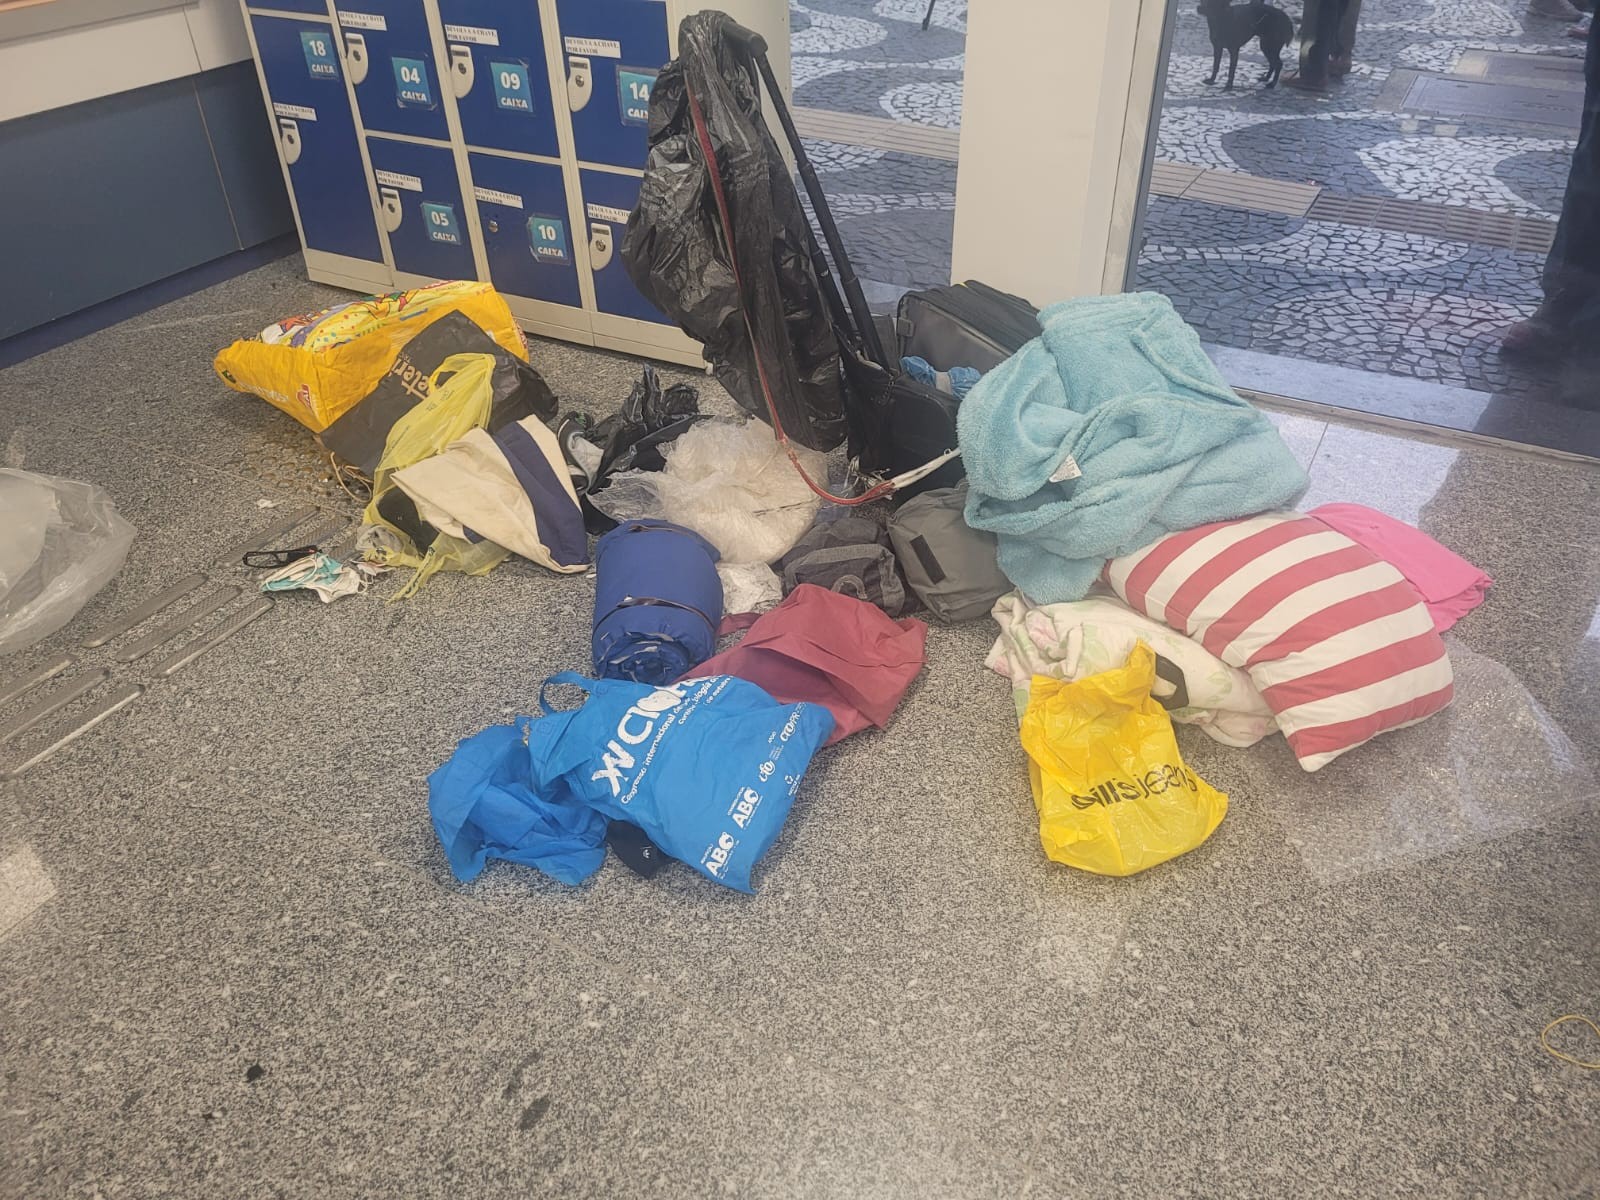 Mala com roupas, brinquedos e pedaços de metal é deixada em agência bancária e mobiliza esquadrão antibombas em Curitiba